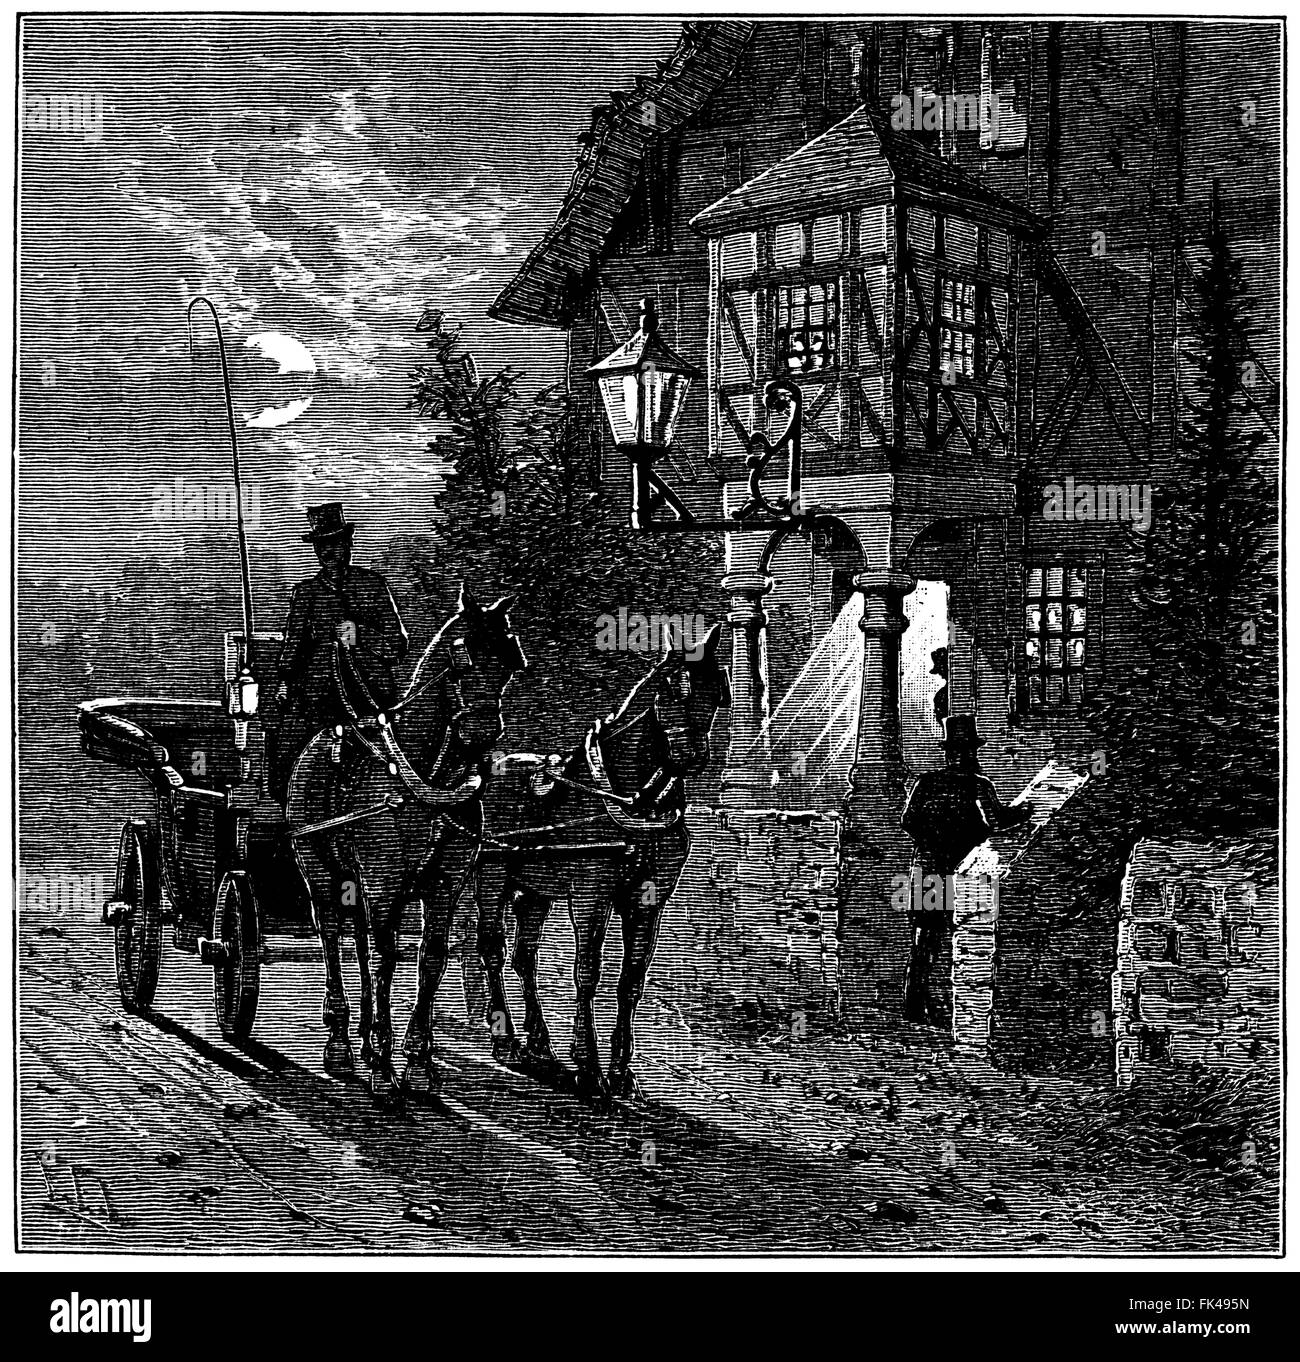 Ankunft im Victorian Inn in der Nacht - Vintage illustration Stockfoto